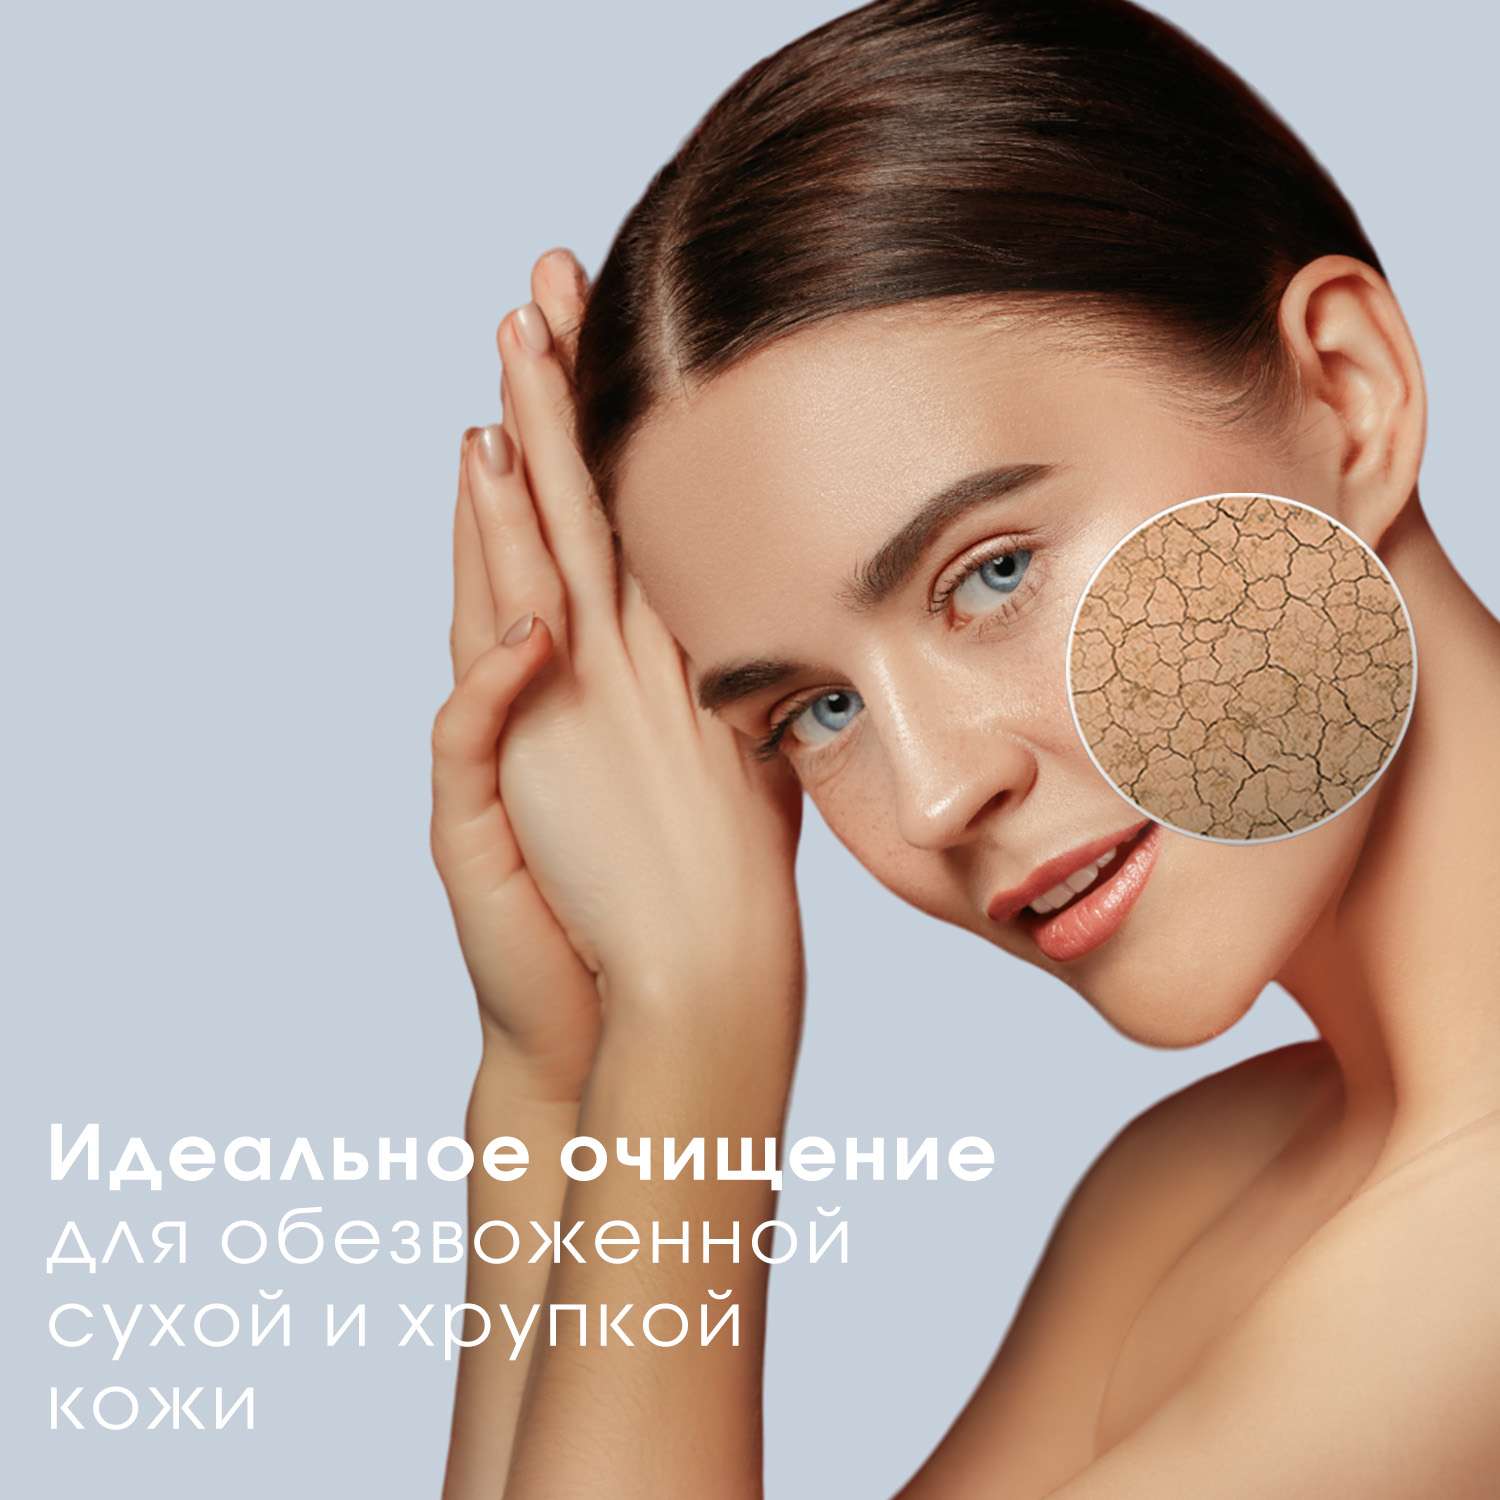 Гель для умывания лица и тела Camomilla BLU для сверхчувствительной кожи Fior di Camomilla Face and body cleanser 500 мл - фото 7